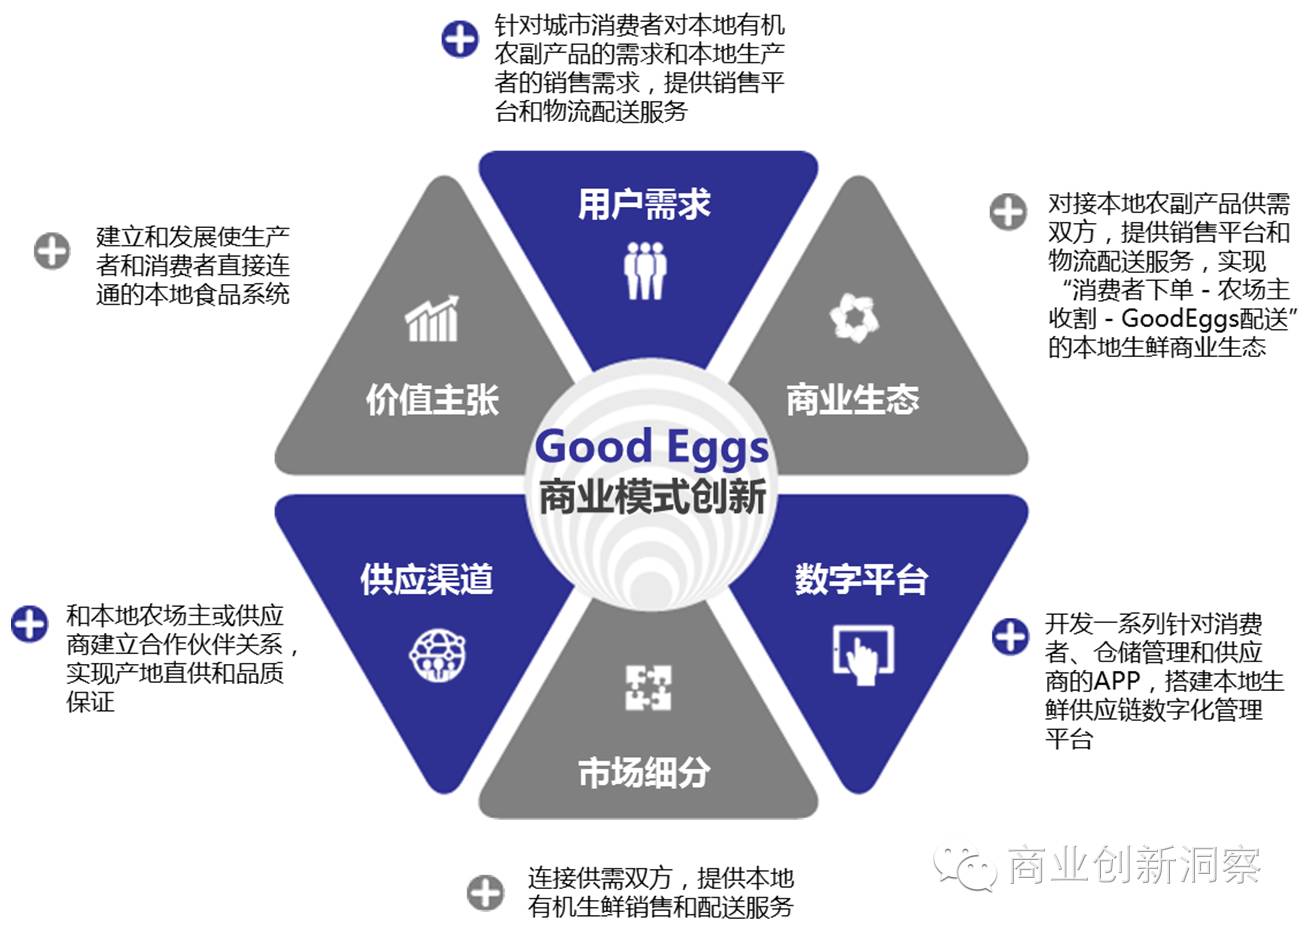 一张图读懂goodeggs商业模式创新goodeggs成立于2011年,总部位于